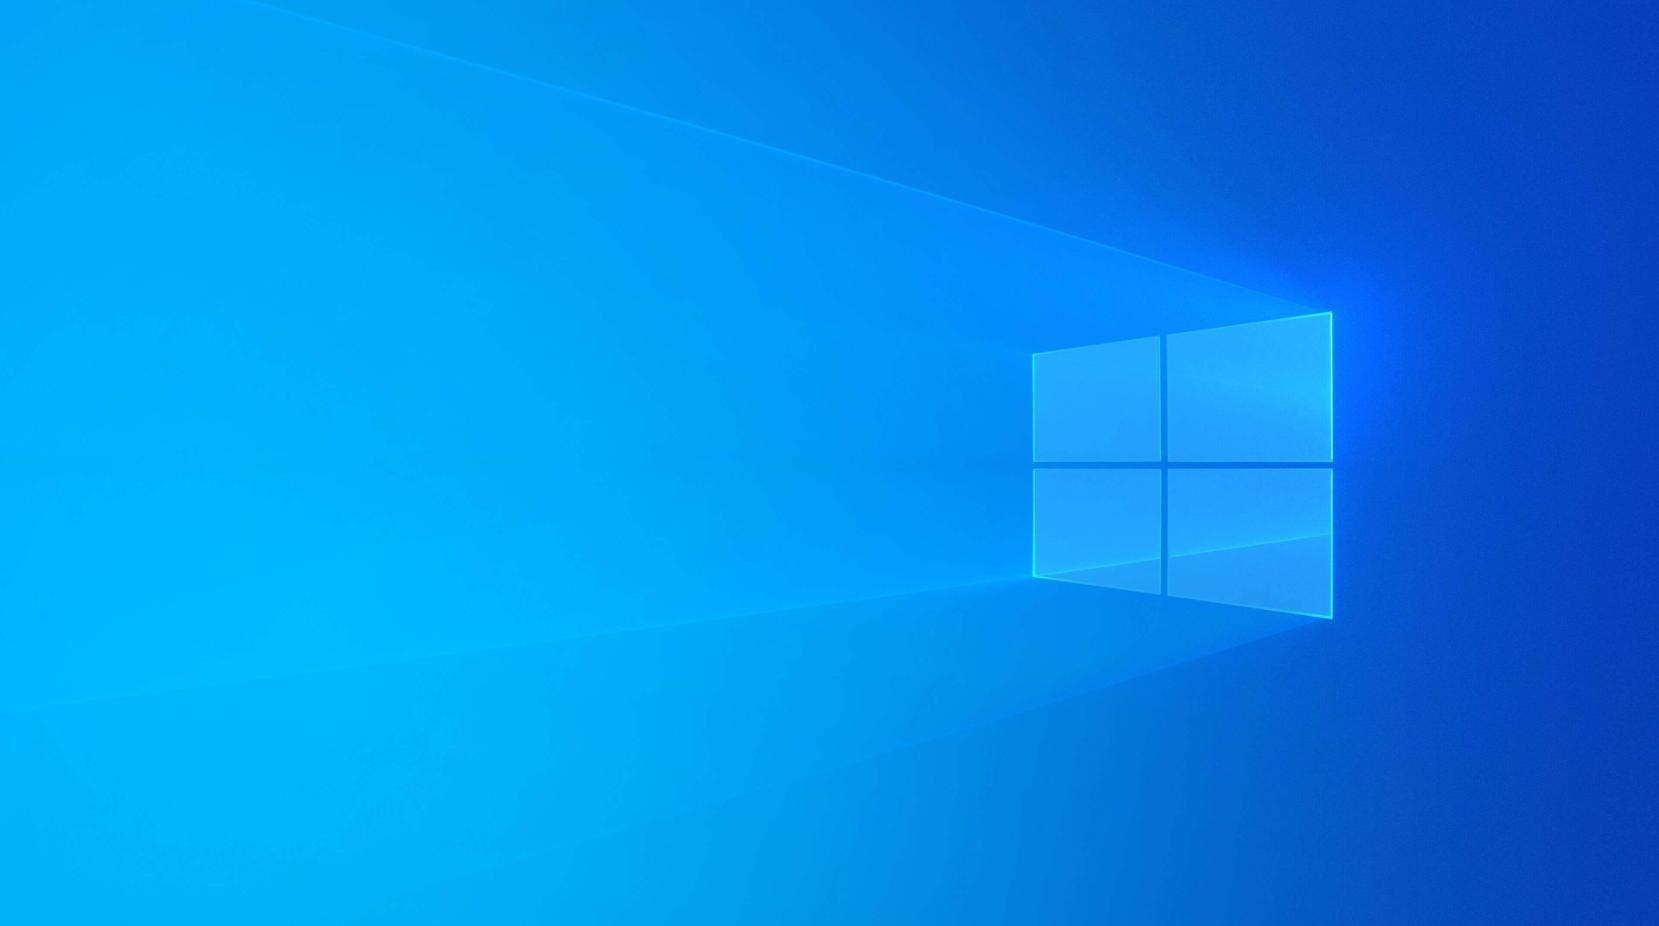 Hình nền win 10 độc lạ: Bị nhàm chán với các hình nền thông thường trên Windows 10? Đừng lo lắng, chúng tôi có những bức hình nền độc đáo và lạ mắt nhất để bạn tha hồ pha trộn và tạo nên phong cách riêng cho chiếc máy tính của mình.